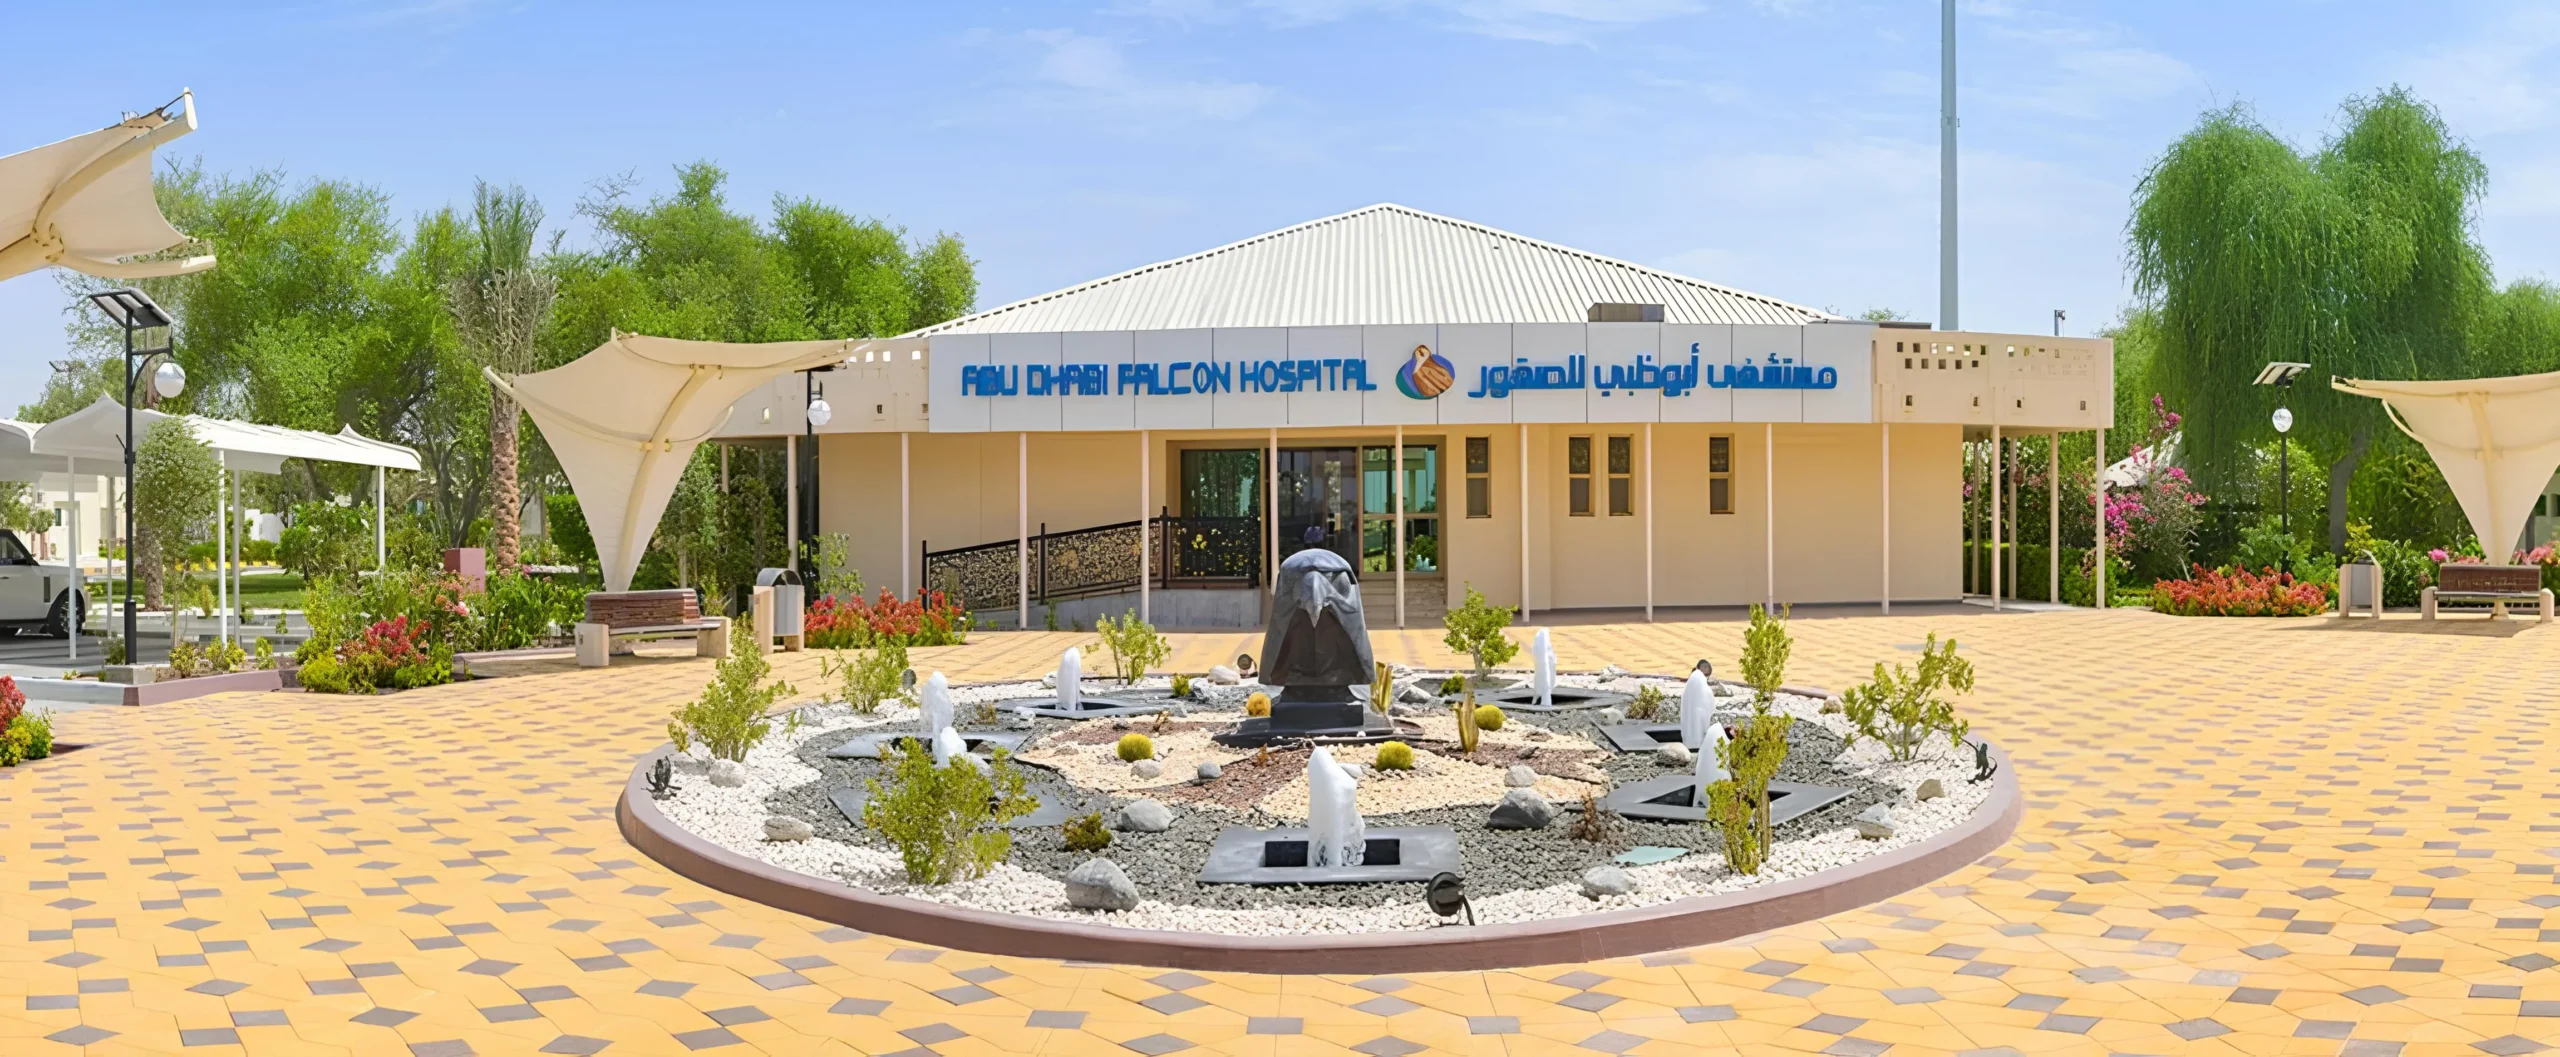 Bird Encounters Abu Dhabi Falcon Hospital